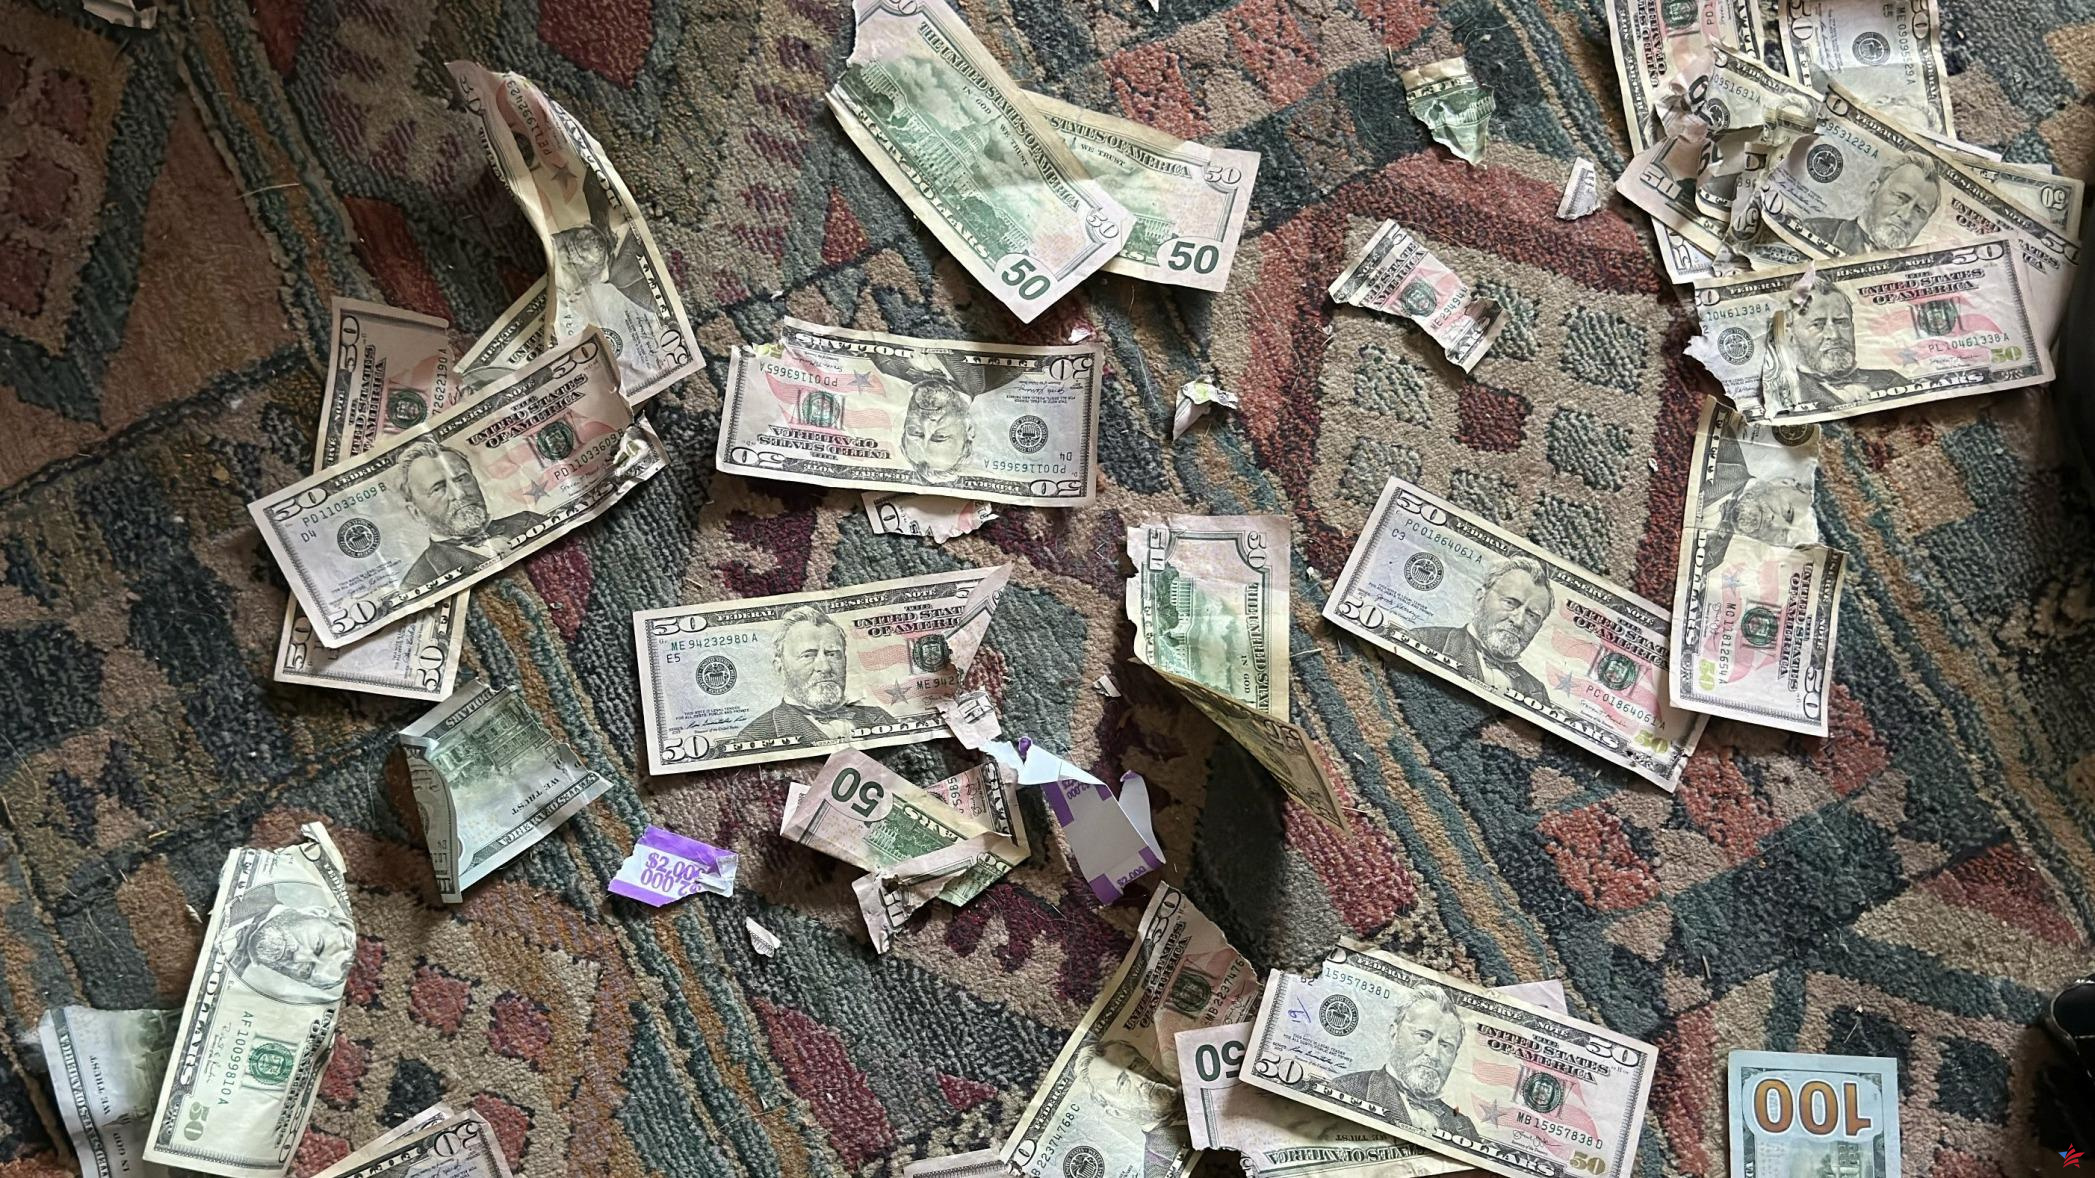 “Nunca pensé que lavaría dinero”: su perro devora 4.000 dólares, recuperan sus billetes con lejía